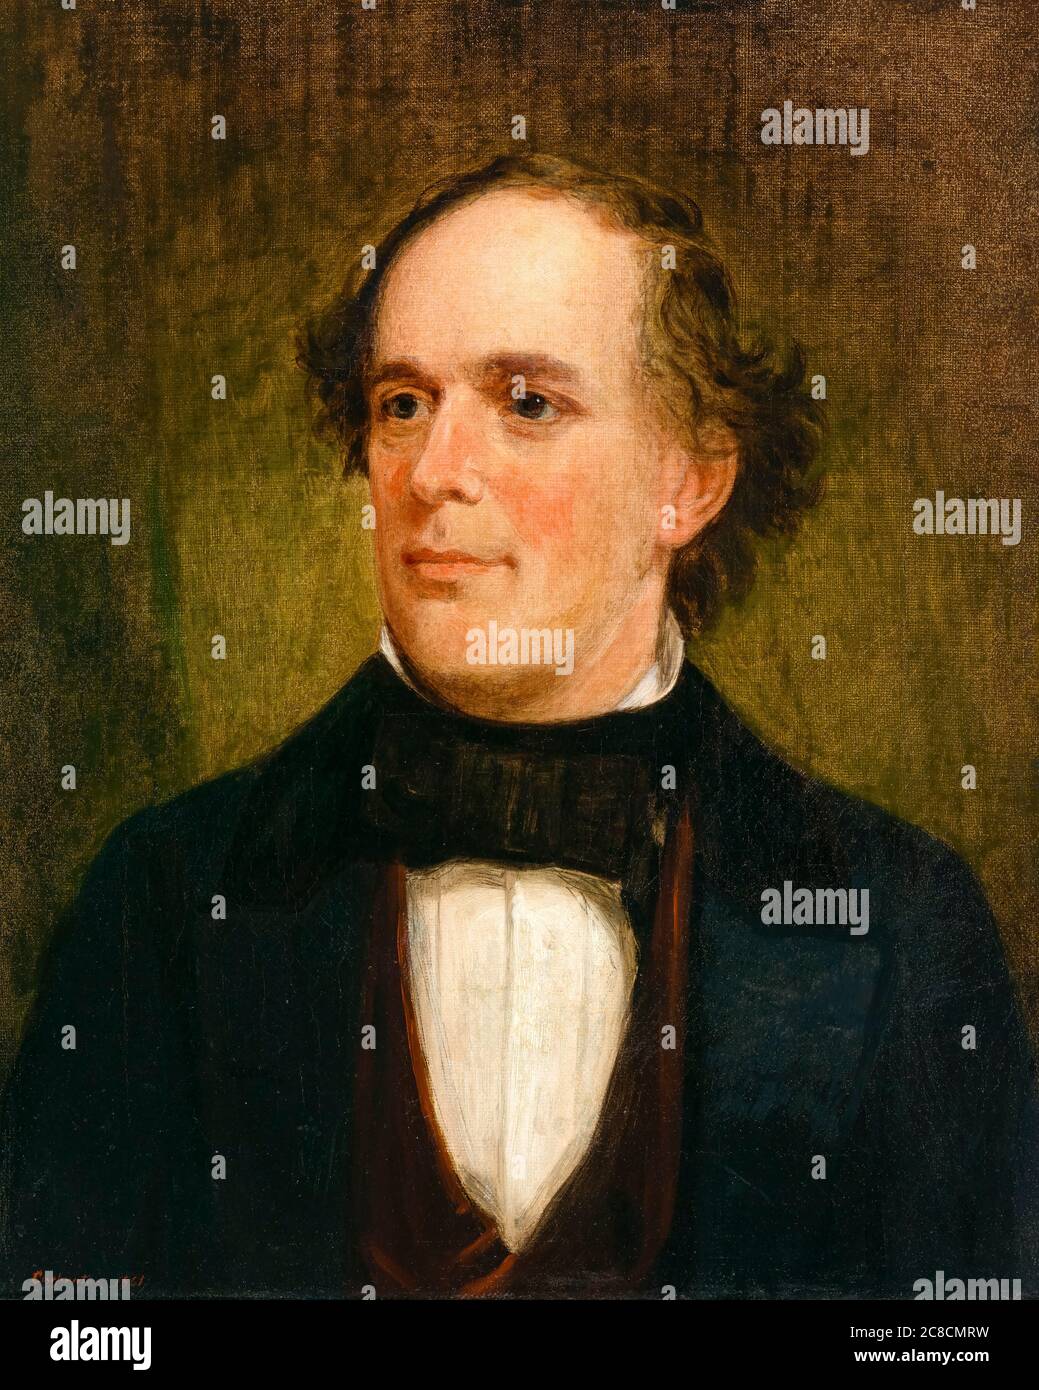 Saumon P Chase (1808-1873), politicien américain, mouvement anti-esclavage abolitionniste et reformateur politique, portrait peint par Francis Bicknell Carpenter, 1861 Banque D'Images